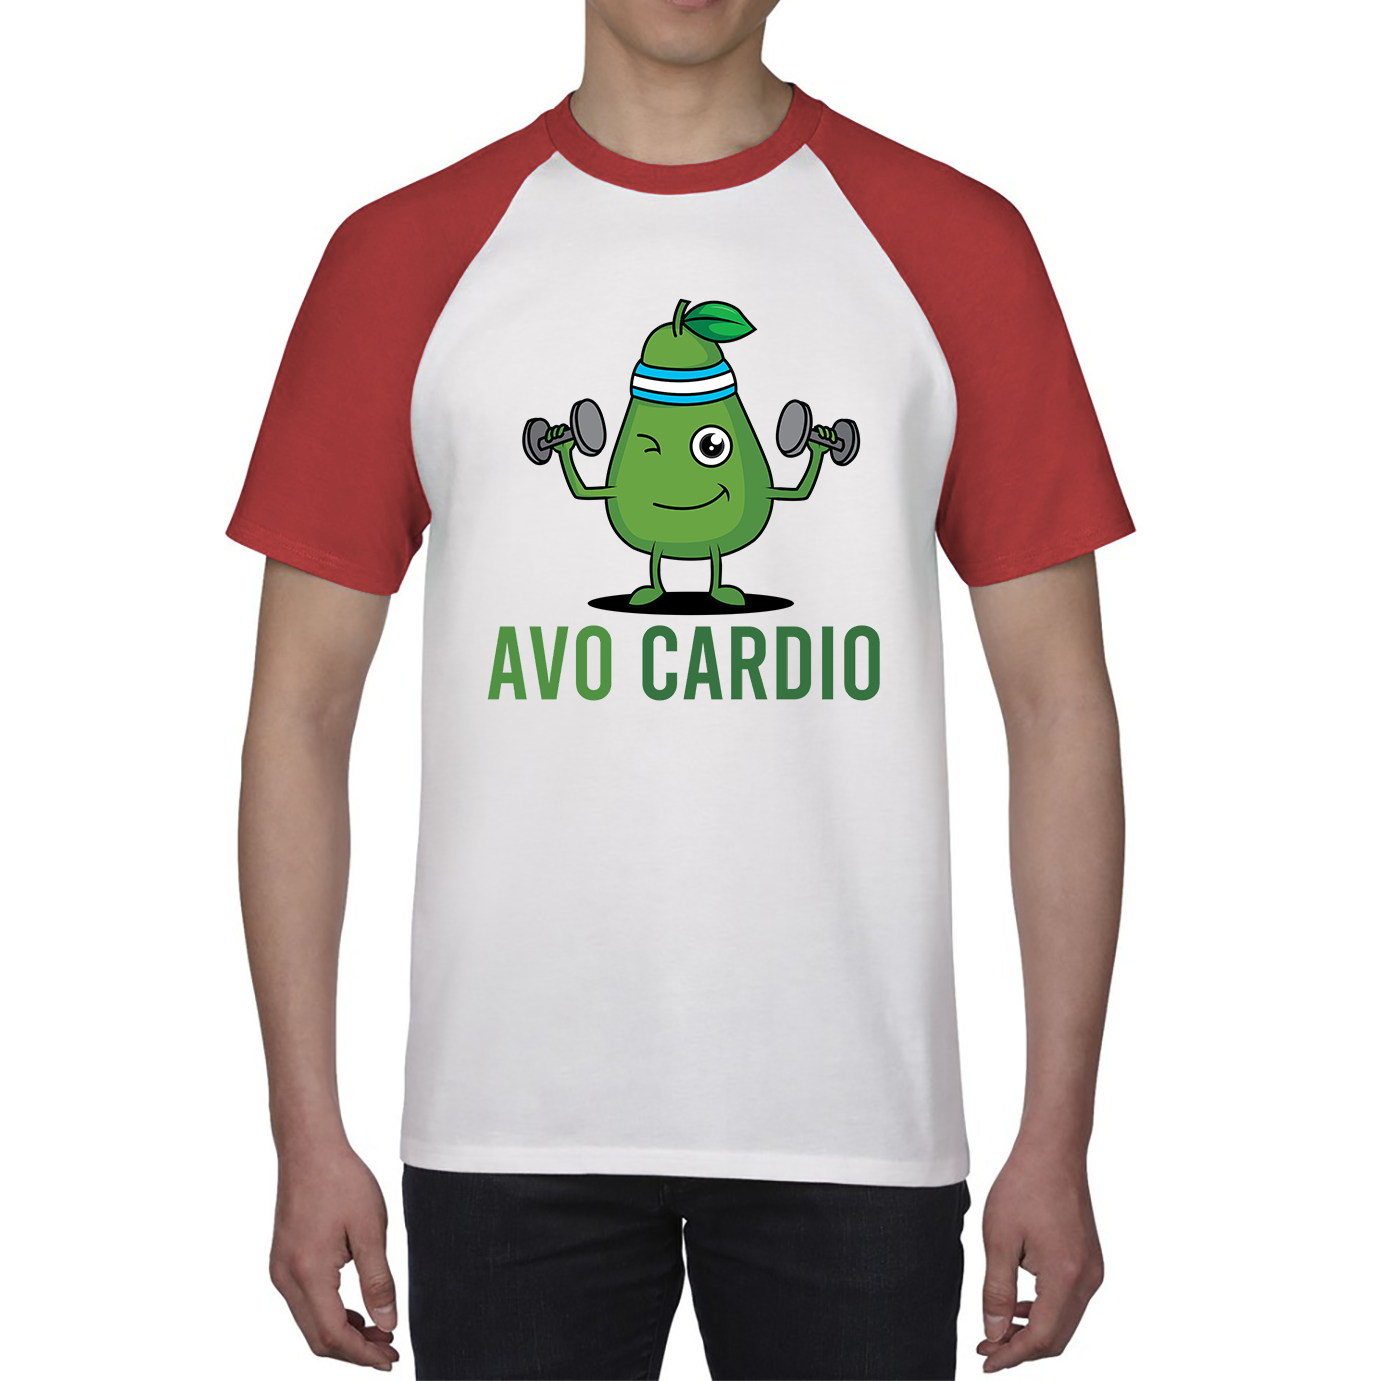 Avo Cardio Funny Avocado Fitness Baseball T Shirt